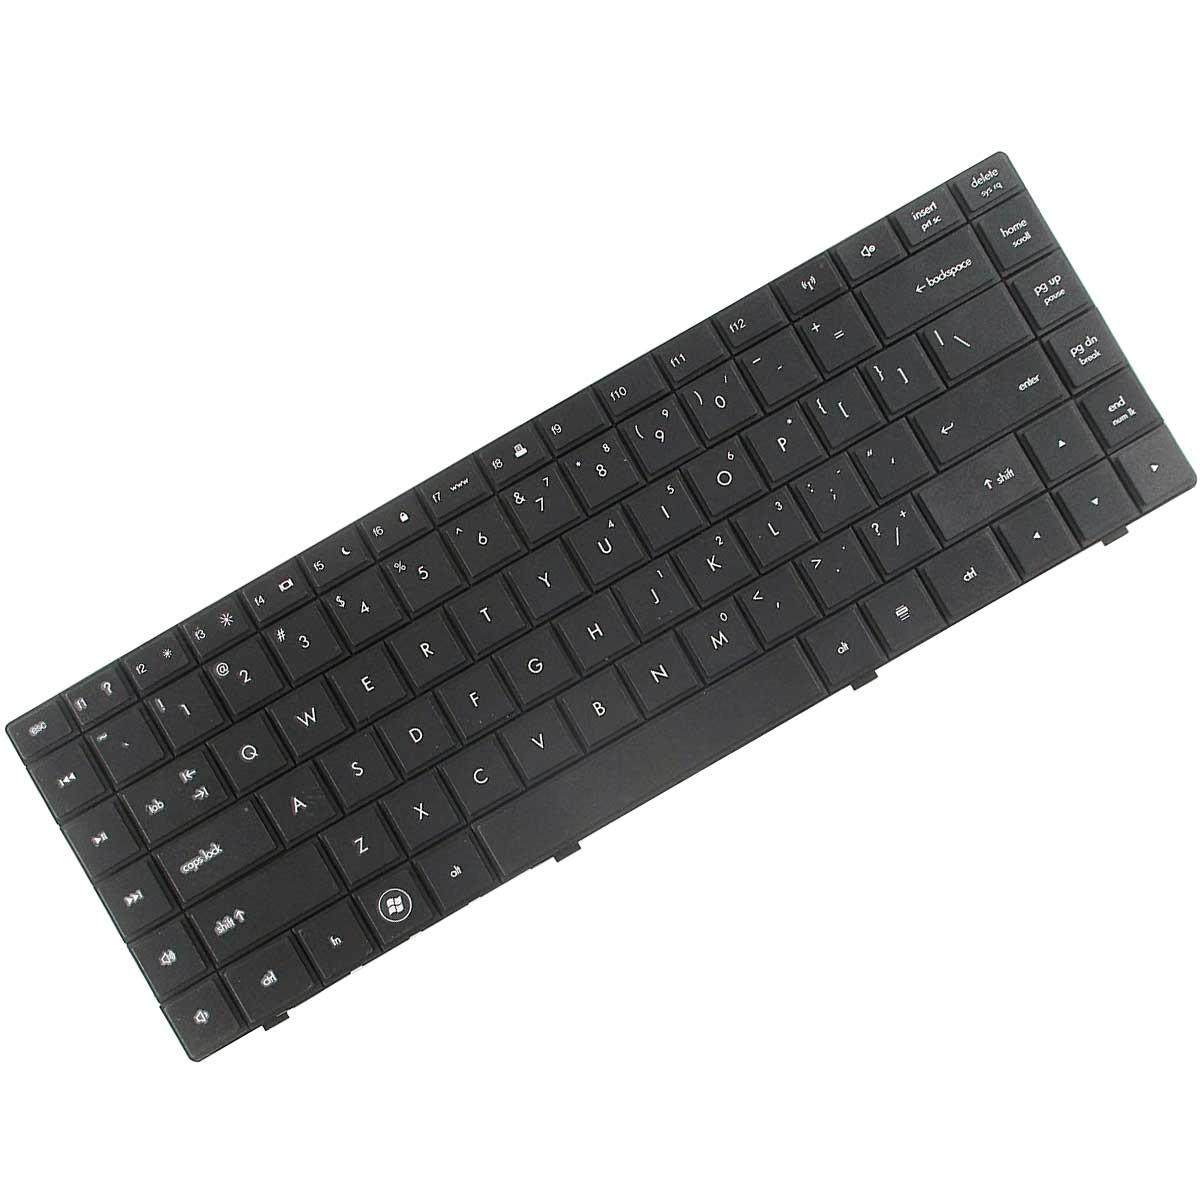 کیبورد لپ تاپ اچ پی Keyboard Laptop Hp 625 620